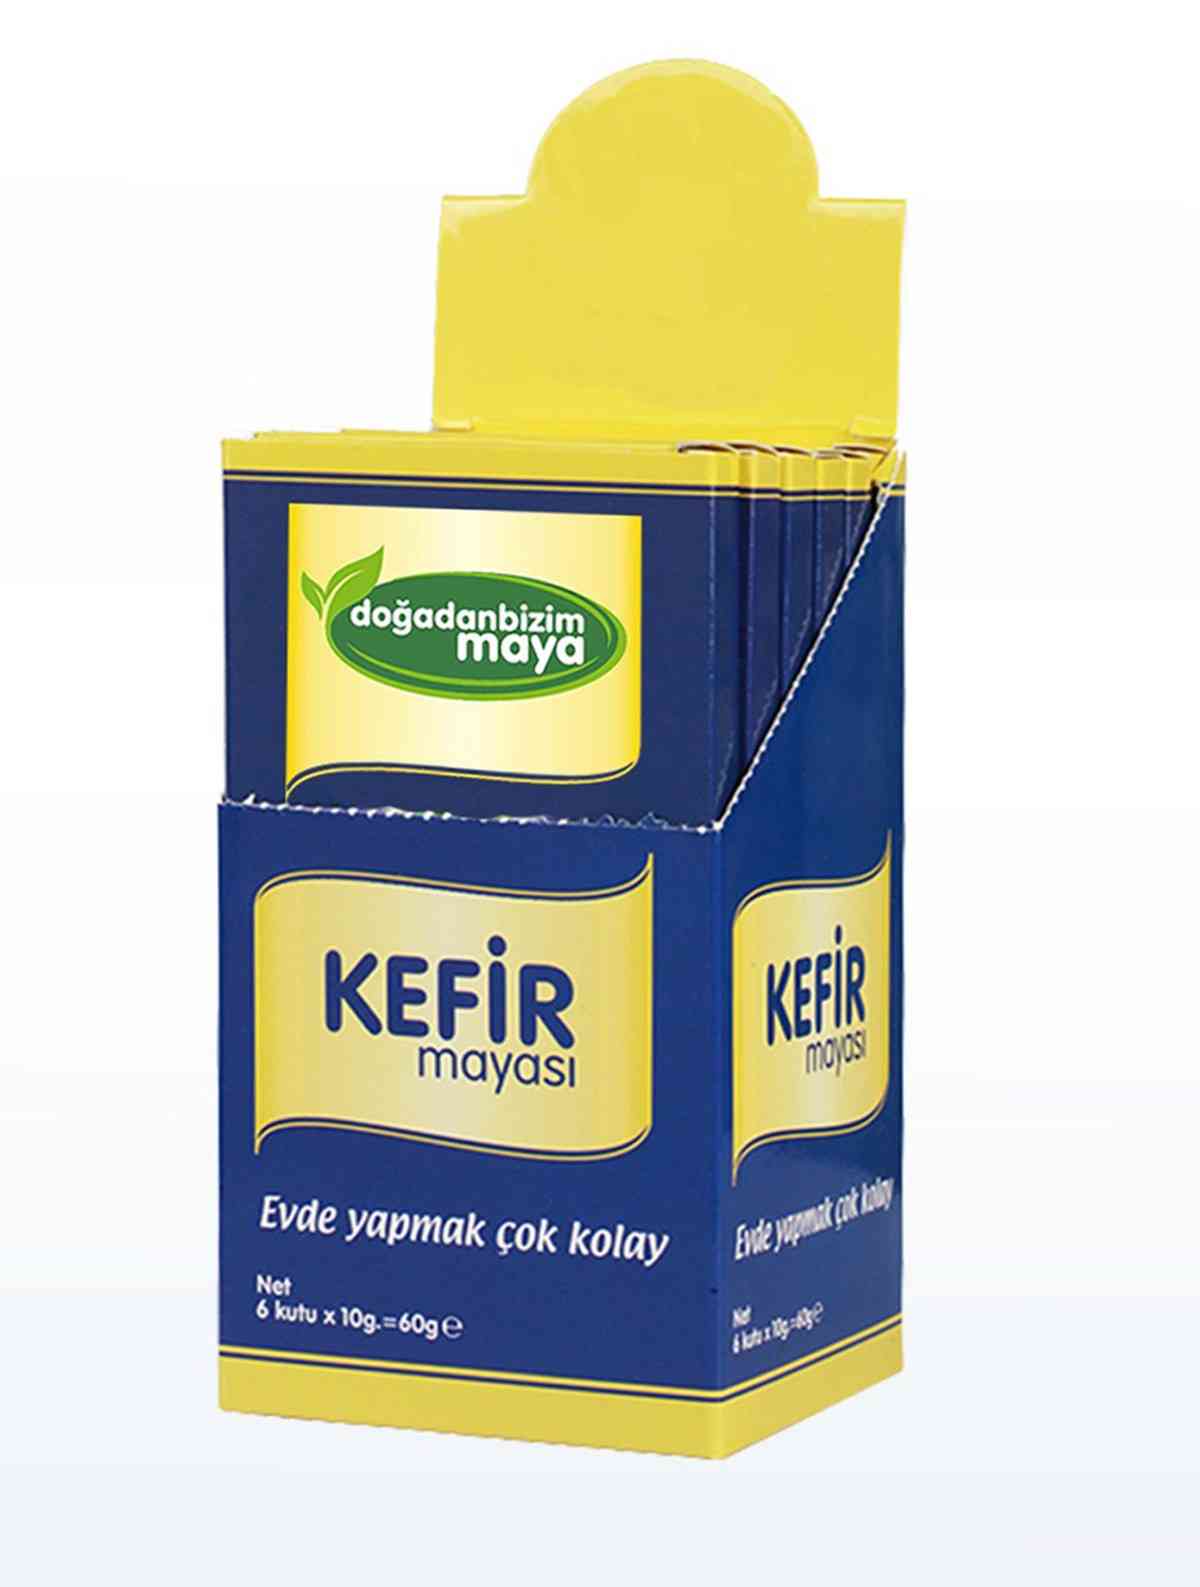 Lievito di kefir, facilmente per kefir, lievito probiotico per adulti e bambini, prepara facilmente il lievito